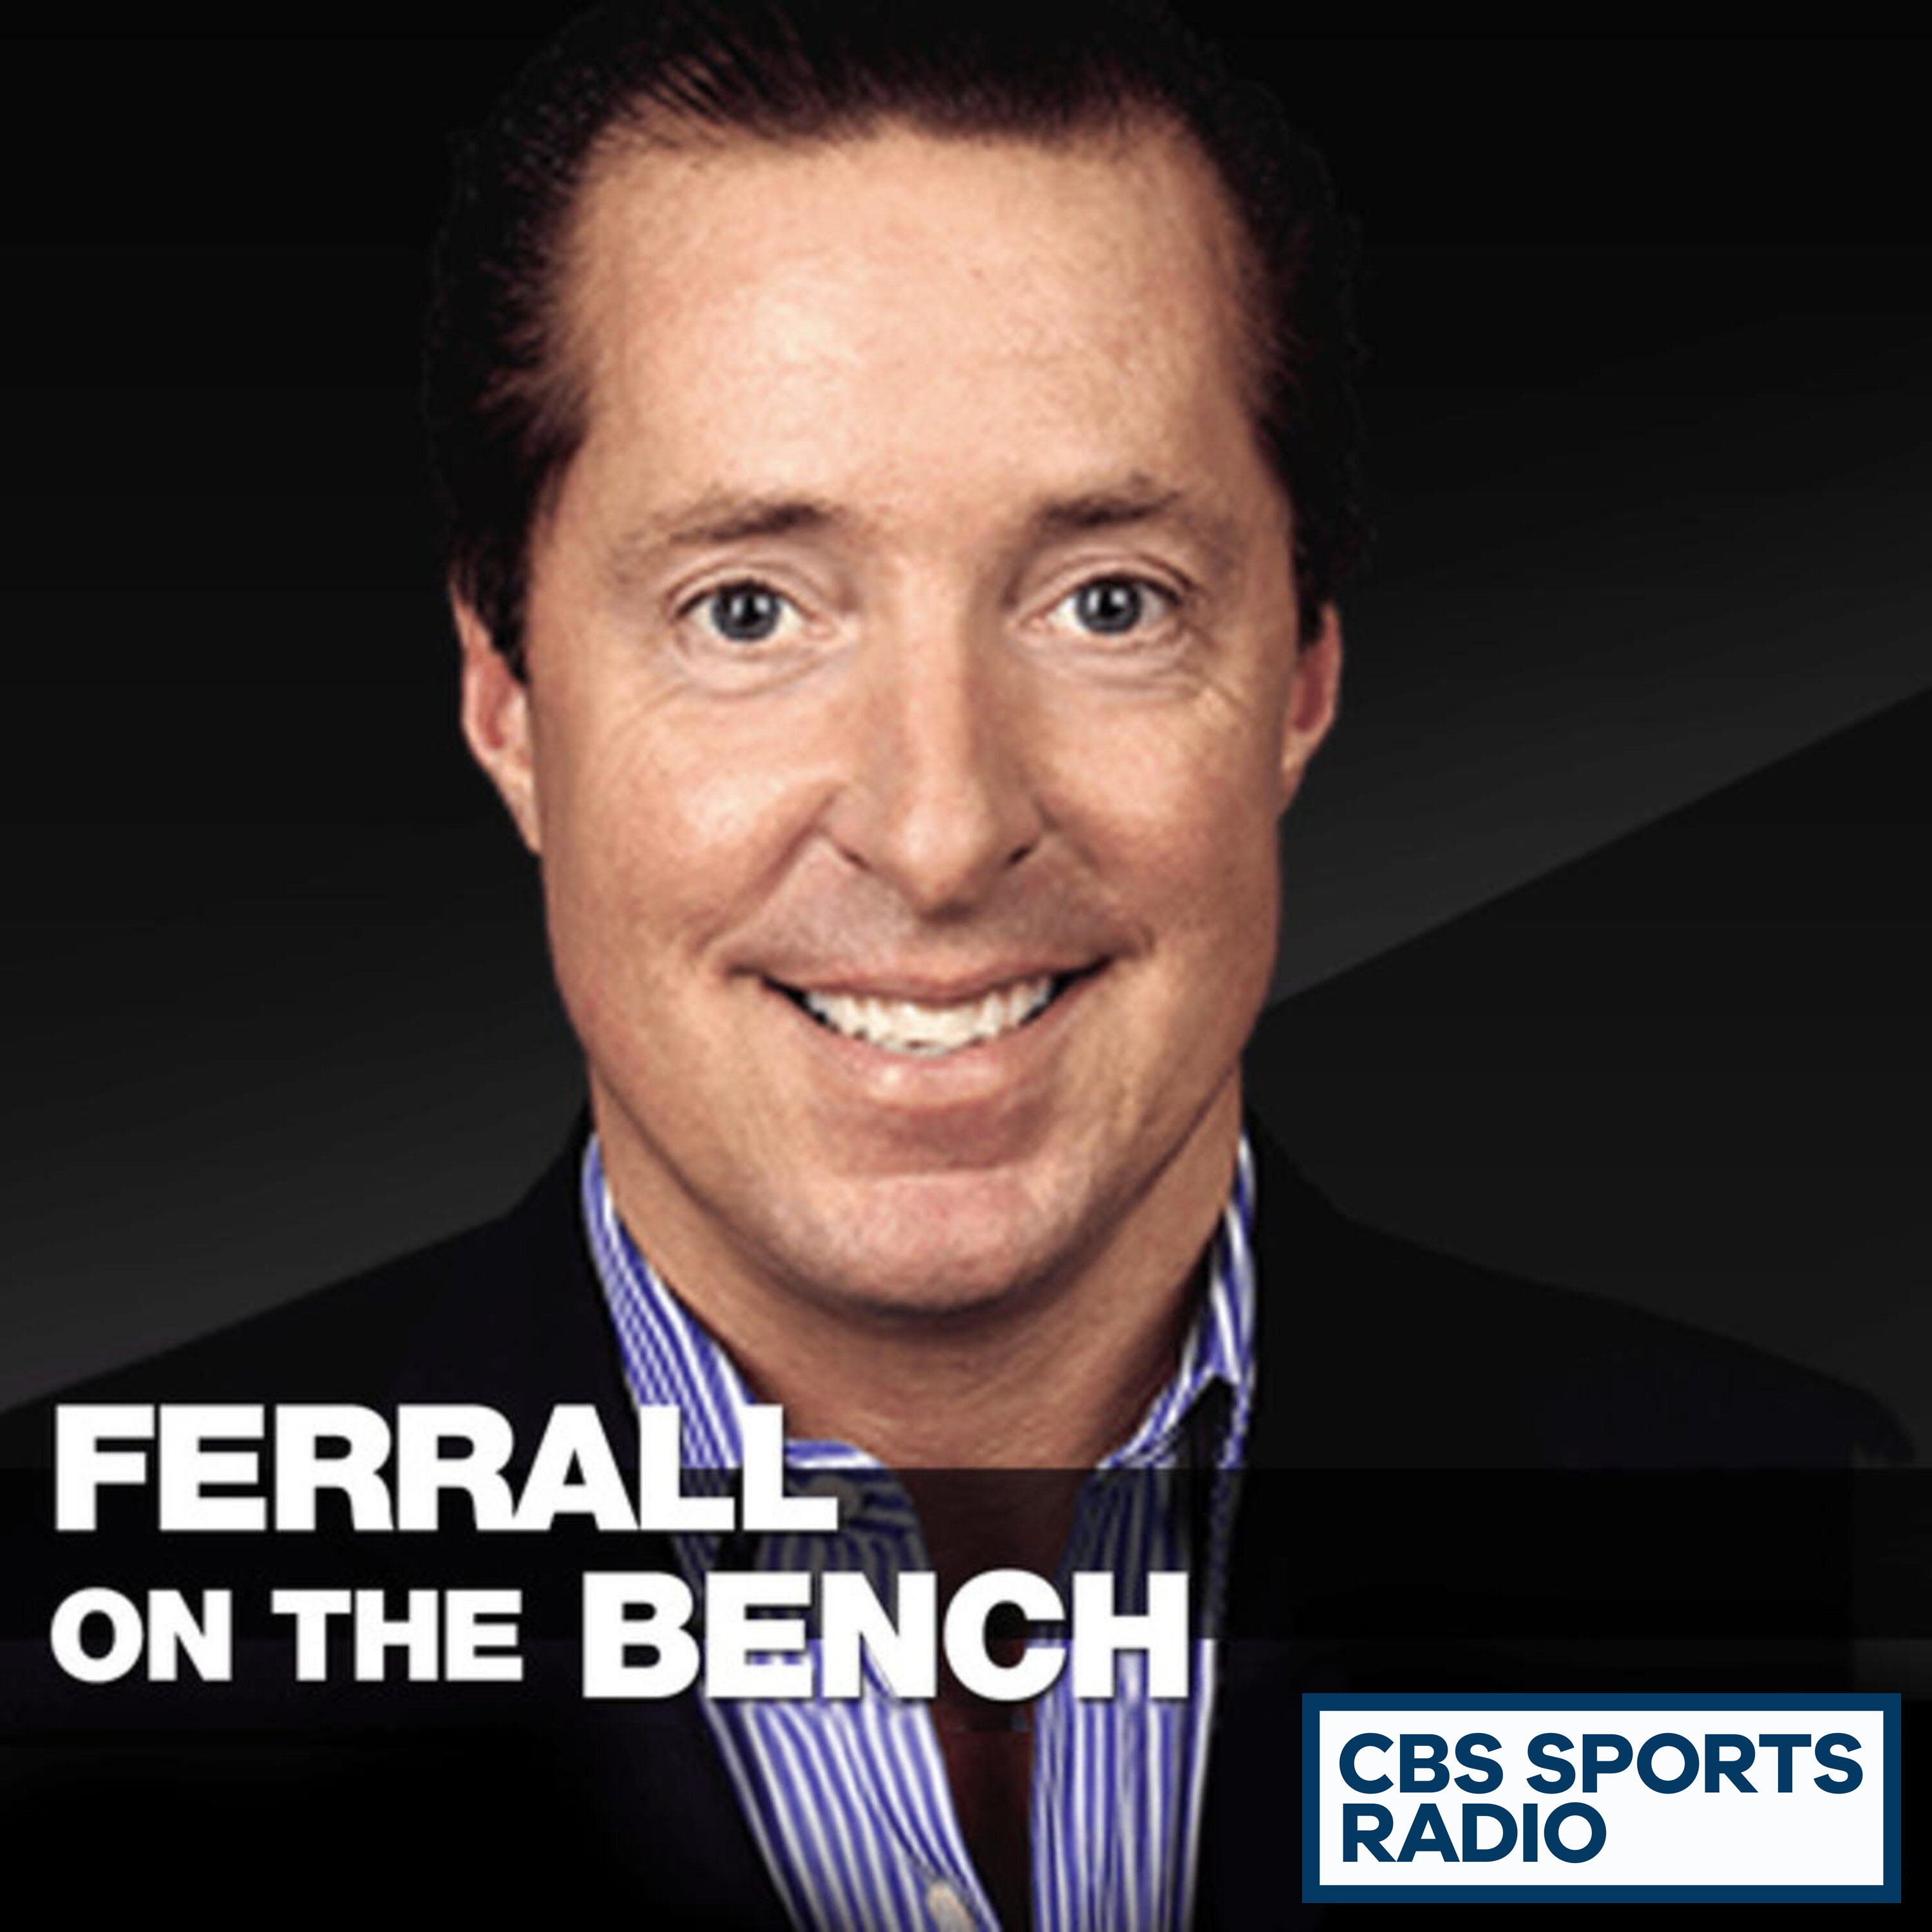 02-06-19 - Ferrall on the Bench - Ferrall on Philadelphia 76ers